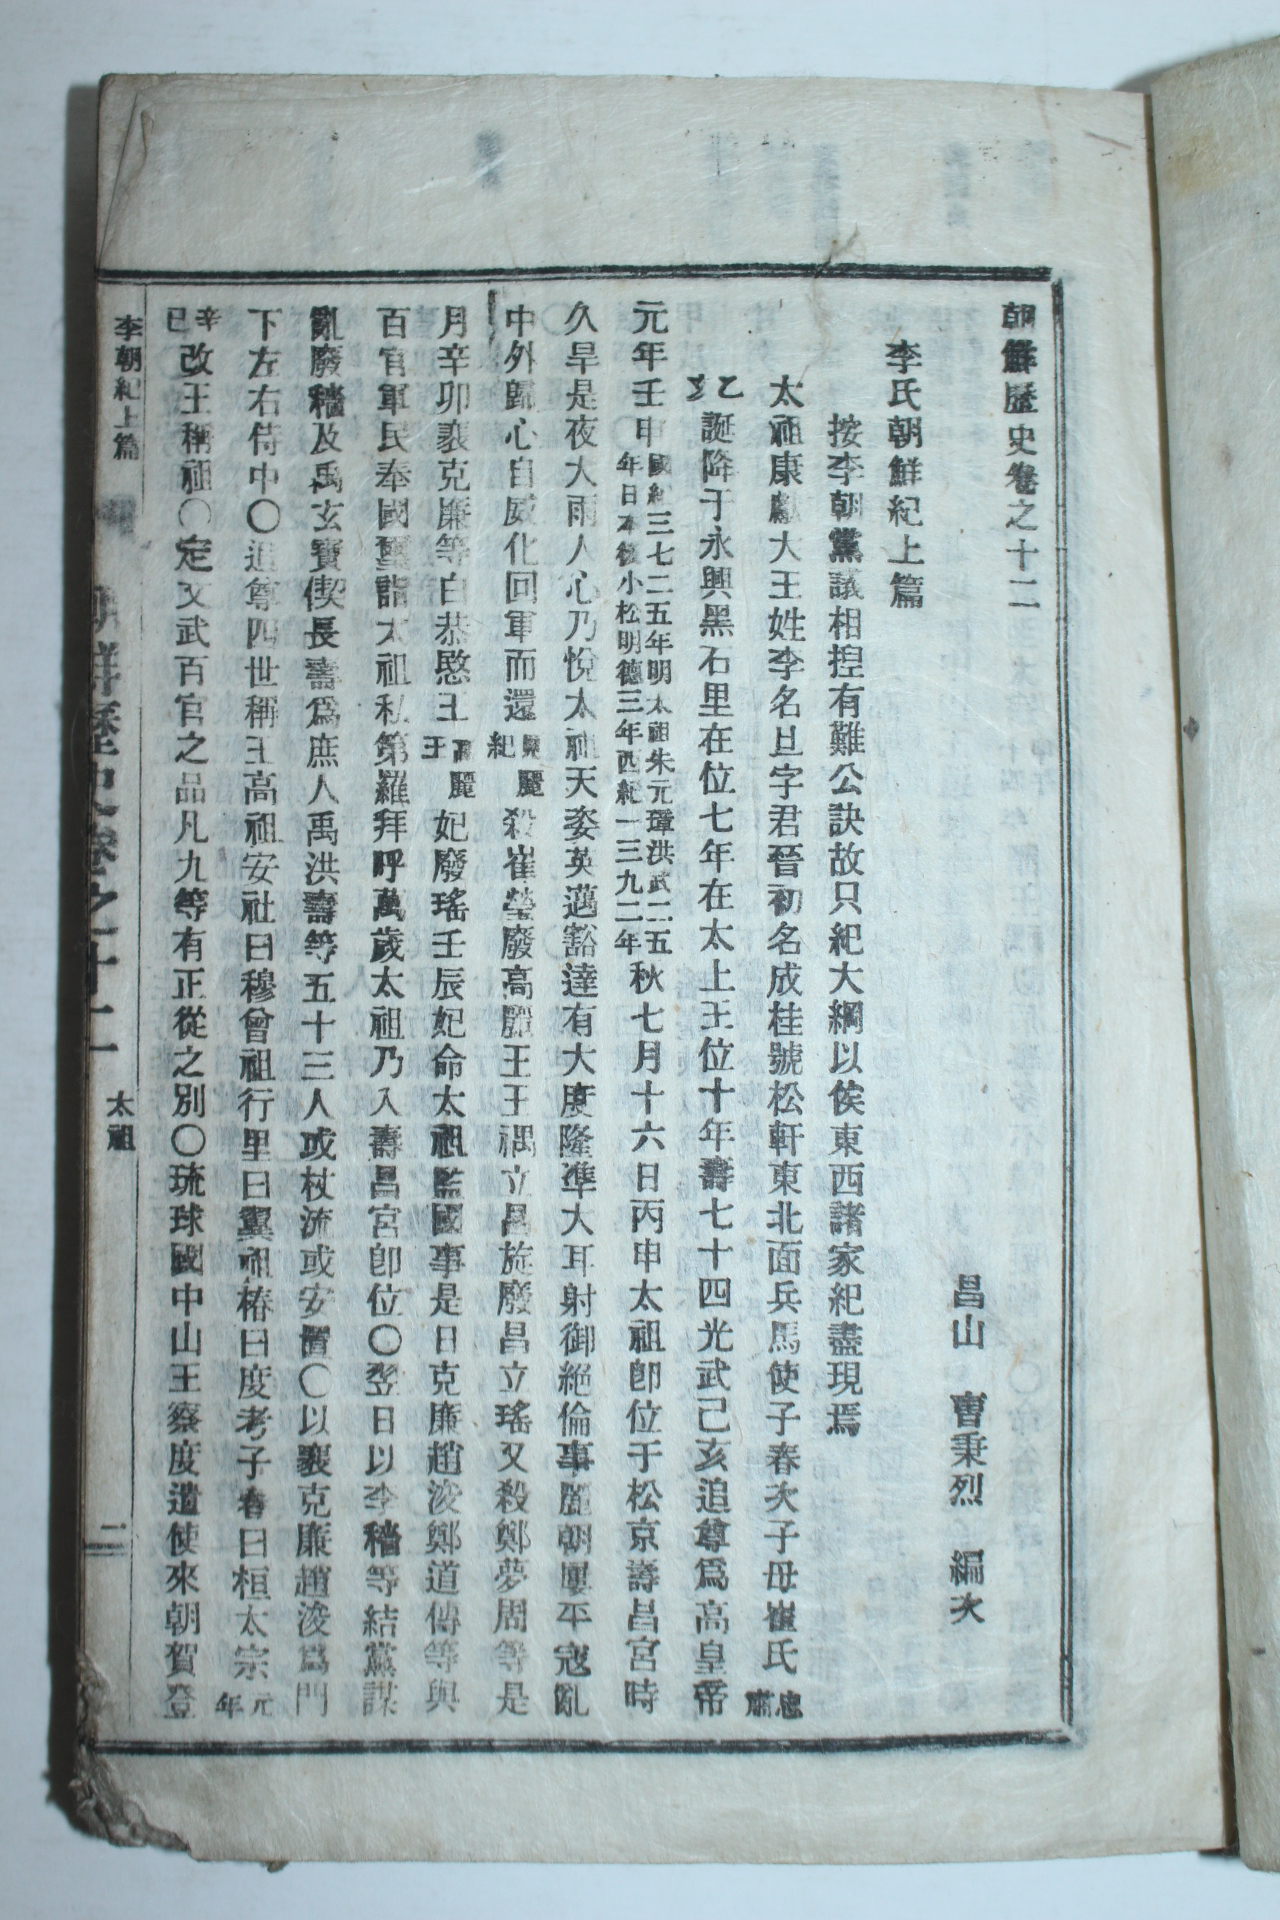 1948년 창산조병열(曺秉烈)편 조선역사(朝鮮歷史) 13권3책완질